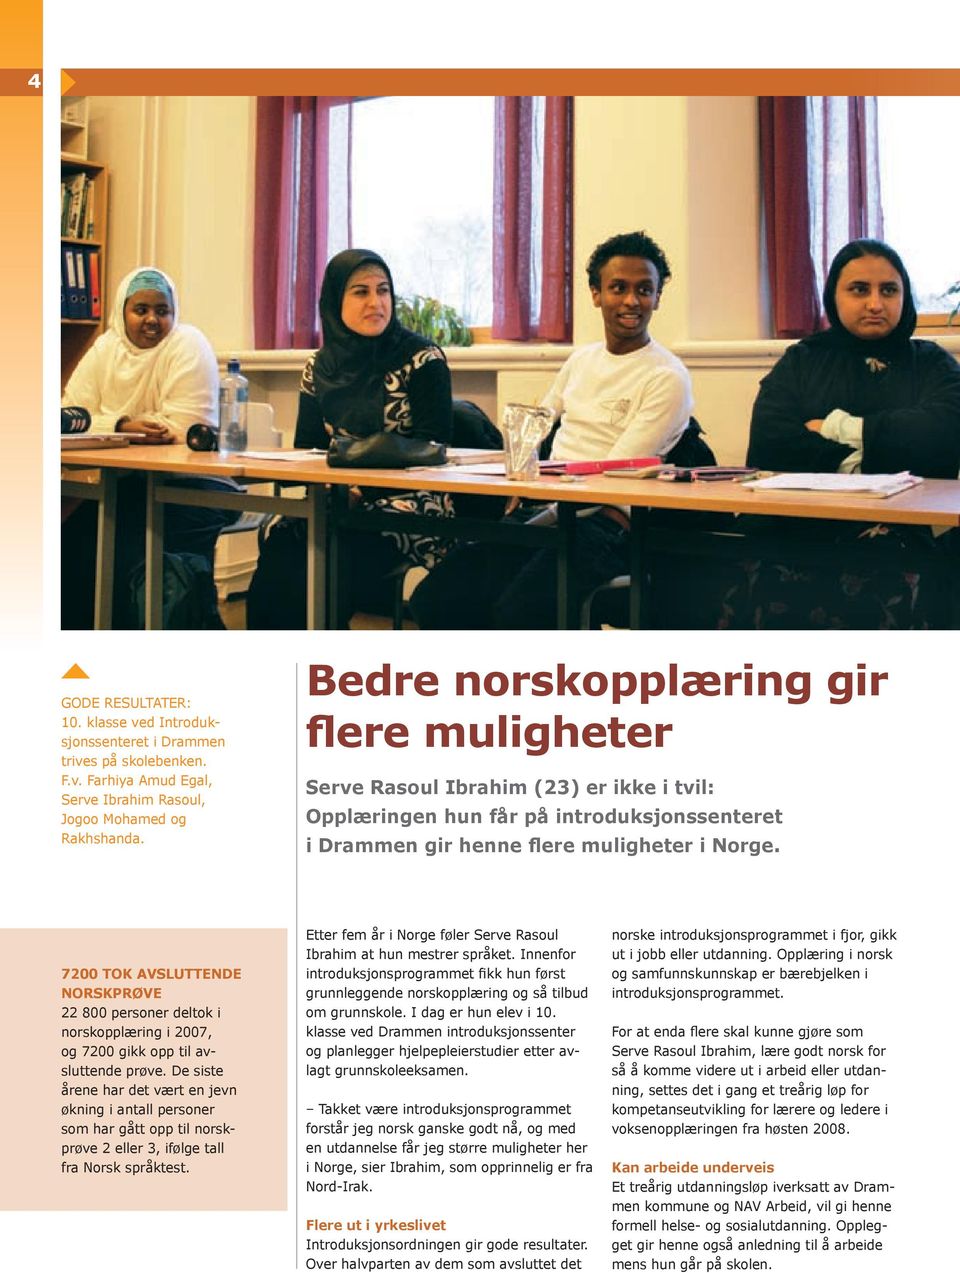 7200 TOK AVSLUTTENDE NORSKPRØVE 22 800 personer deltok i norskopplæring i 2007, og 7200 gikk opp til avsluttende prøve.